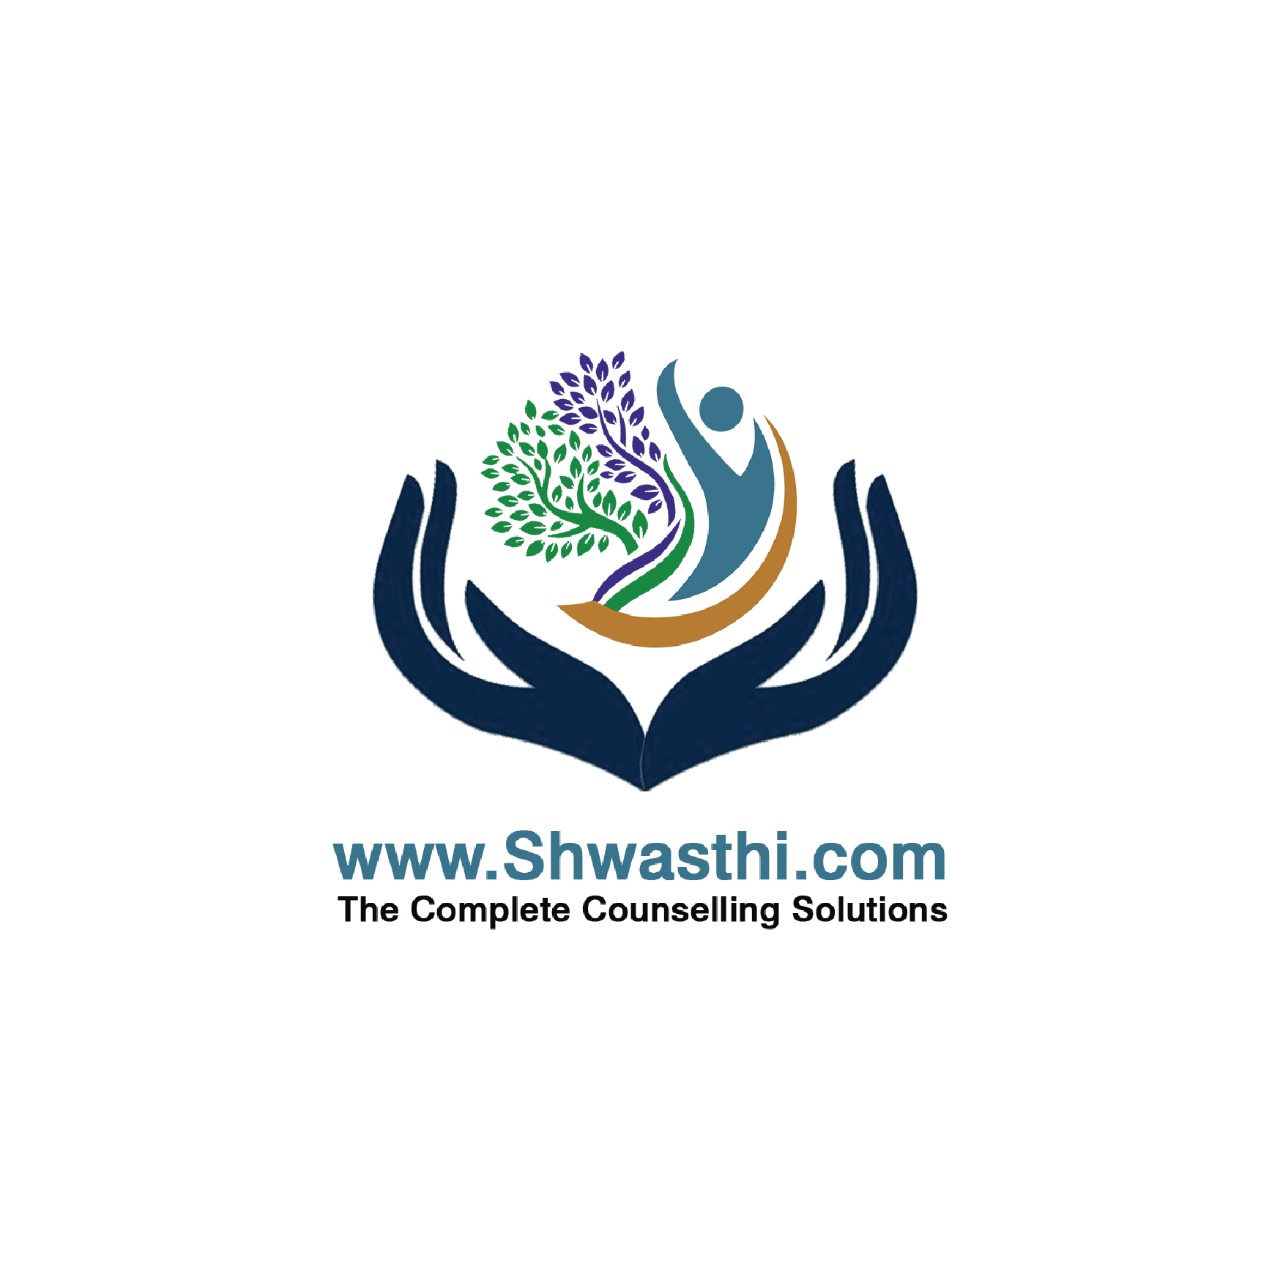 Shwasthi